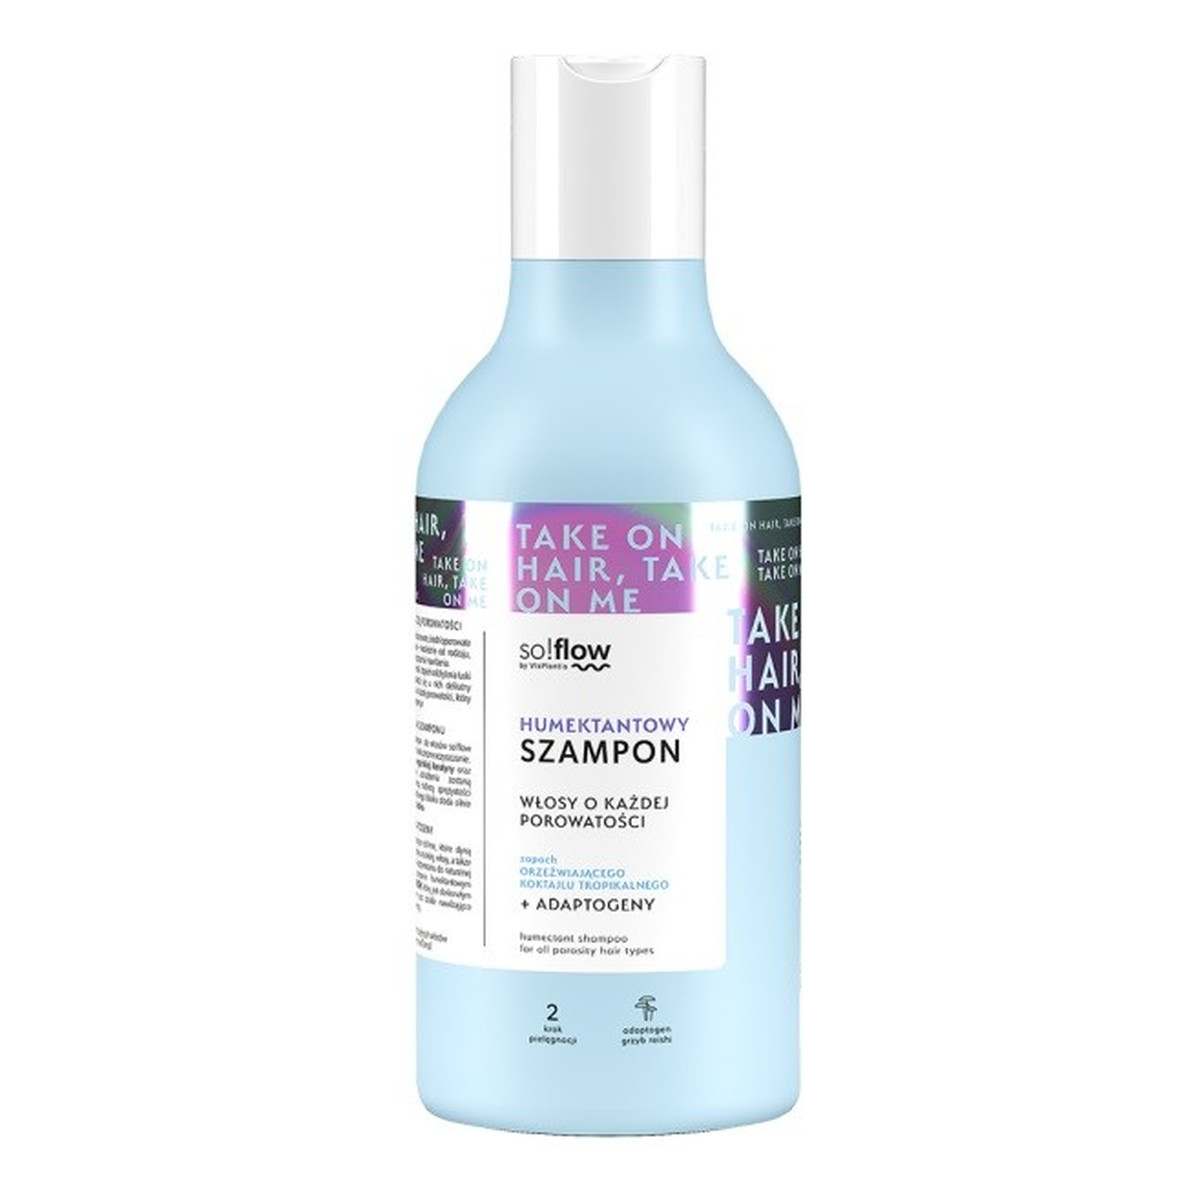 so!flow humektantowy szampon do włosów o każdej porowatości 400ml